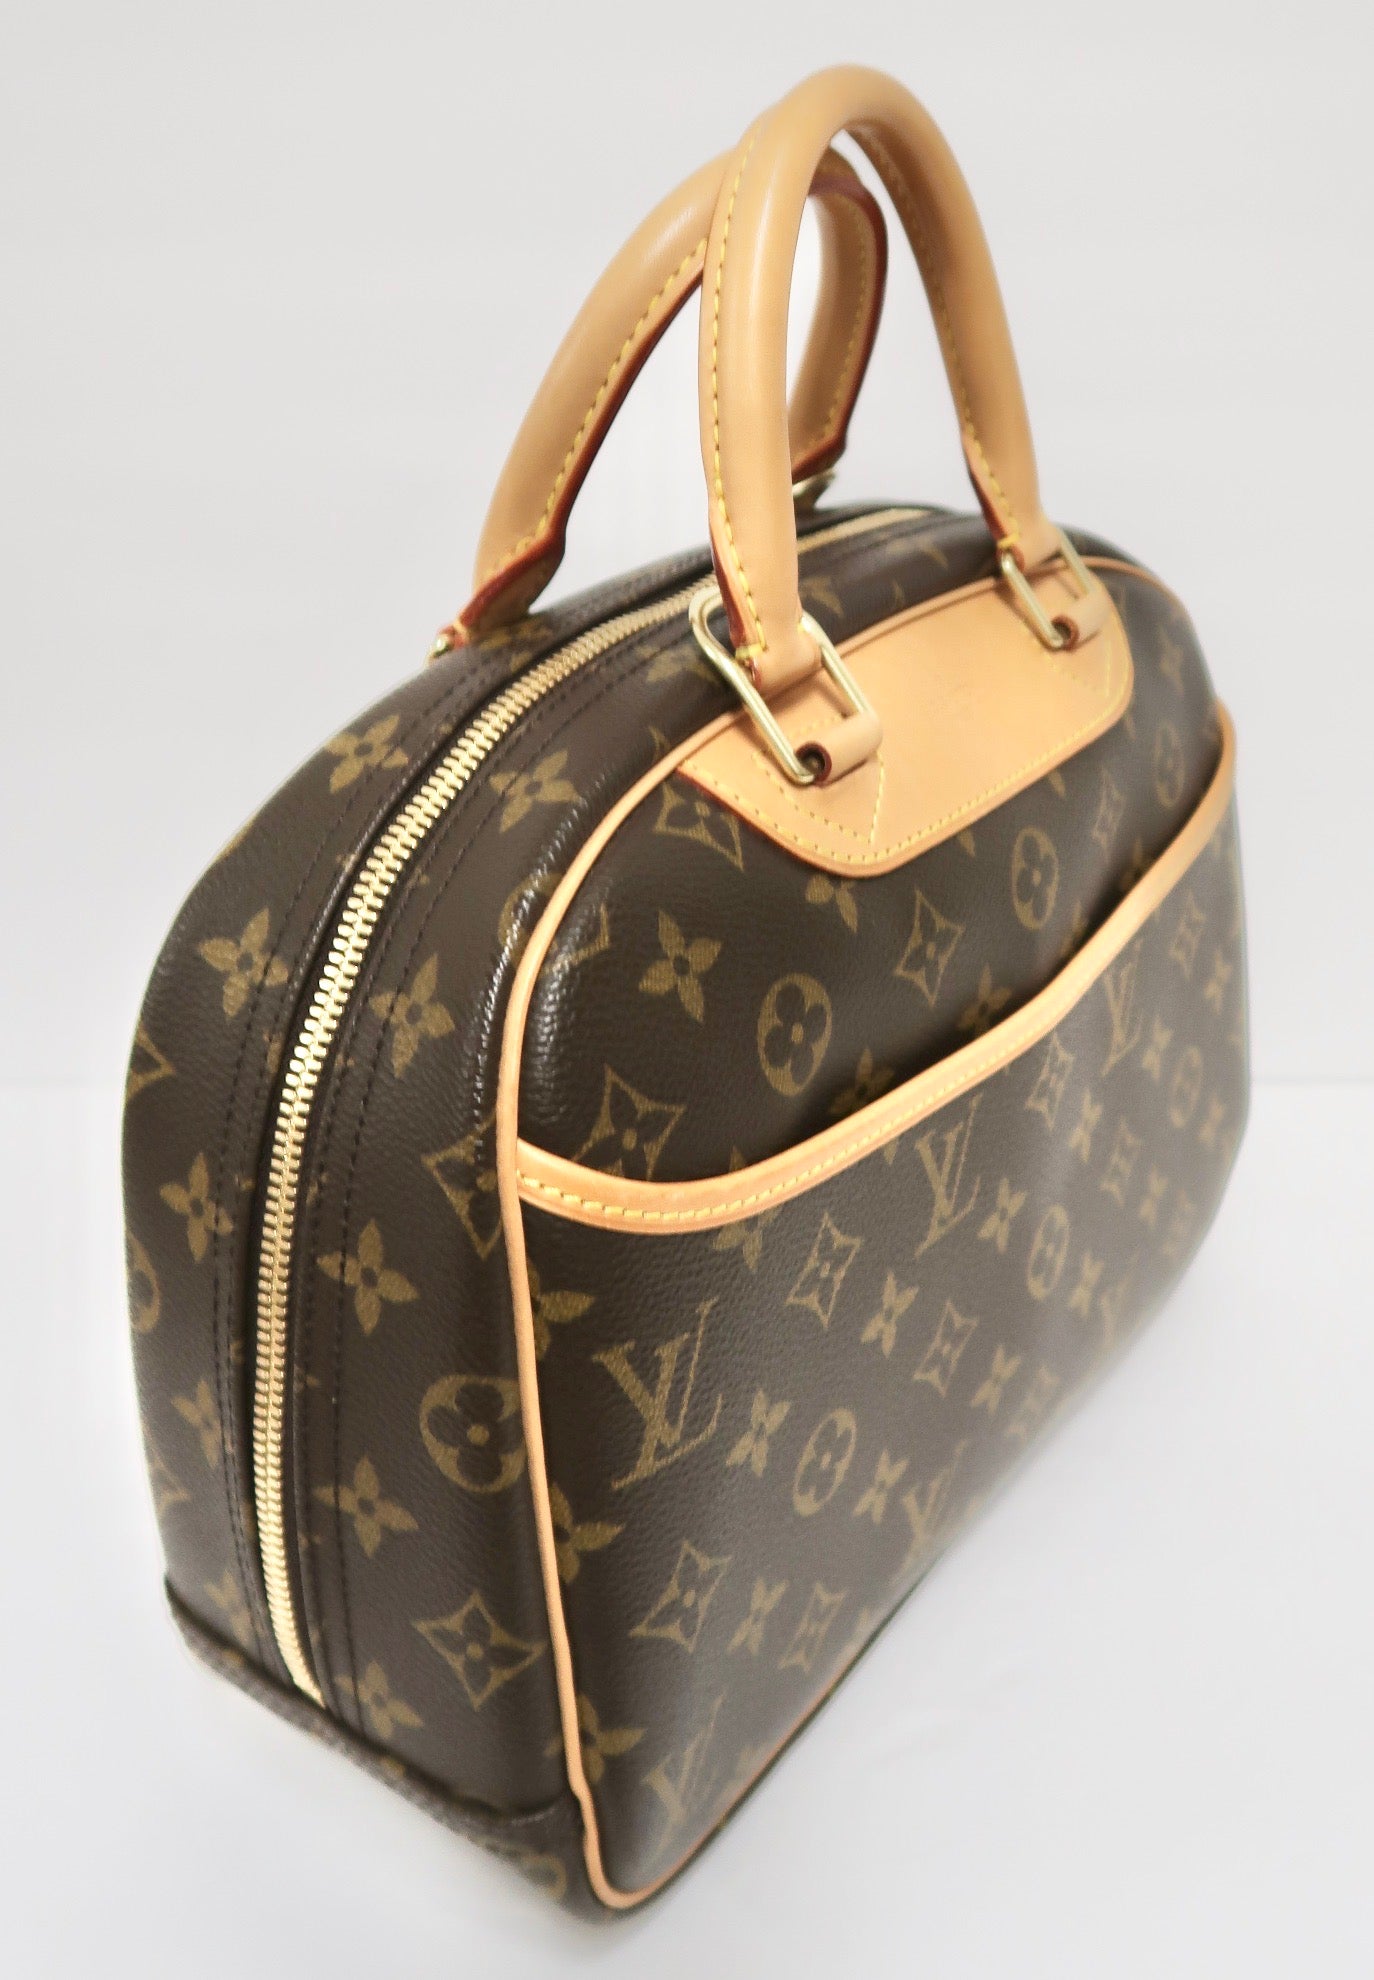 Louis Vuitton, Bags, Authentic Louis Vuitton Monogram Trouville Handbag